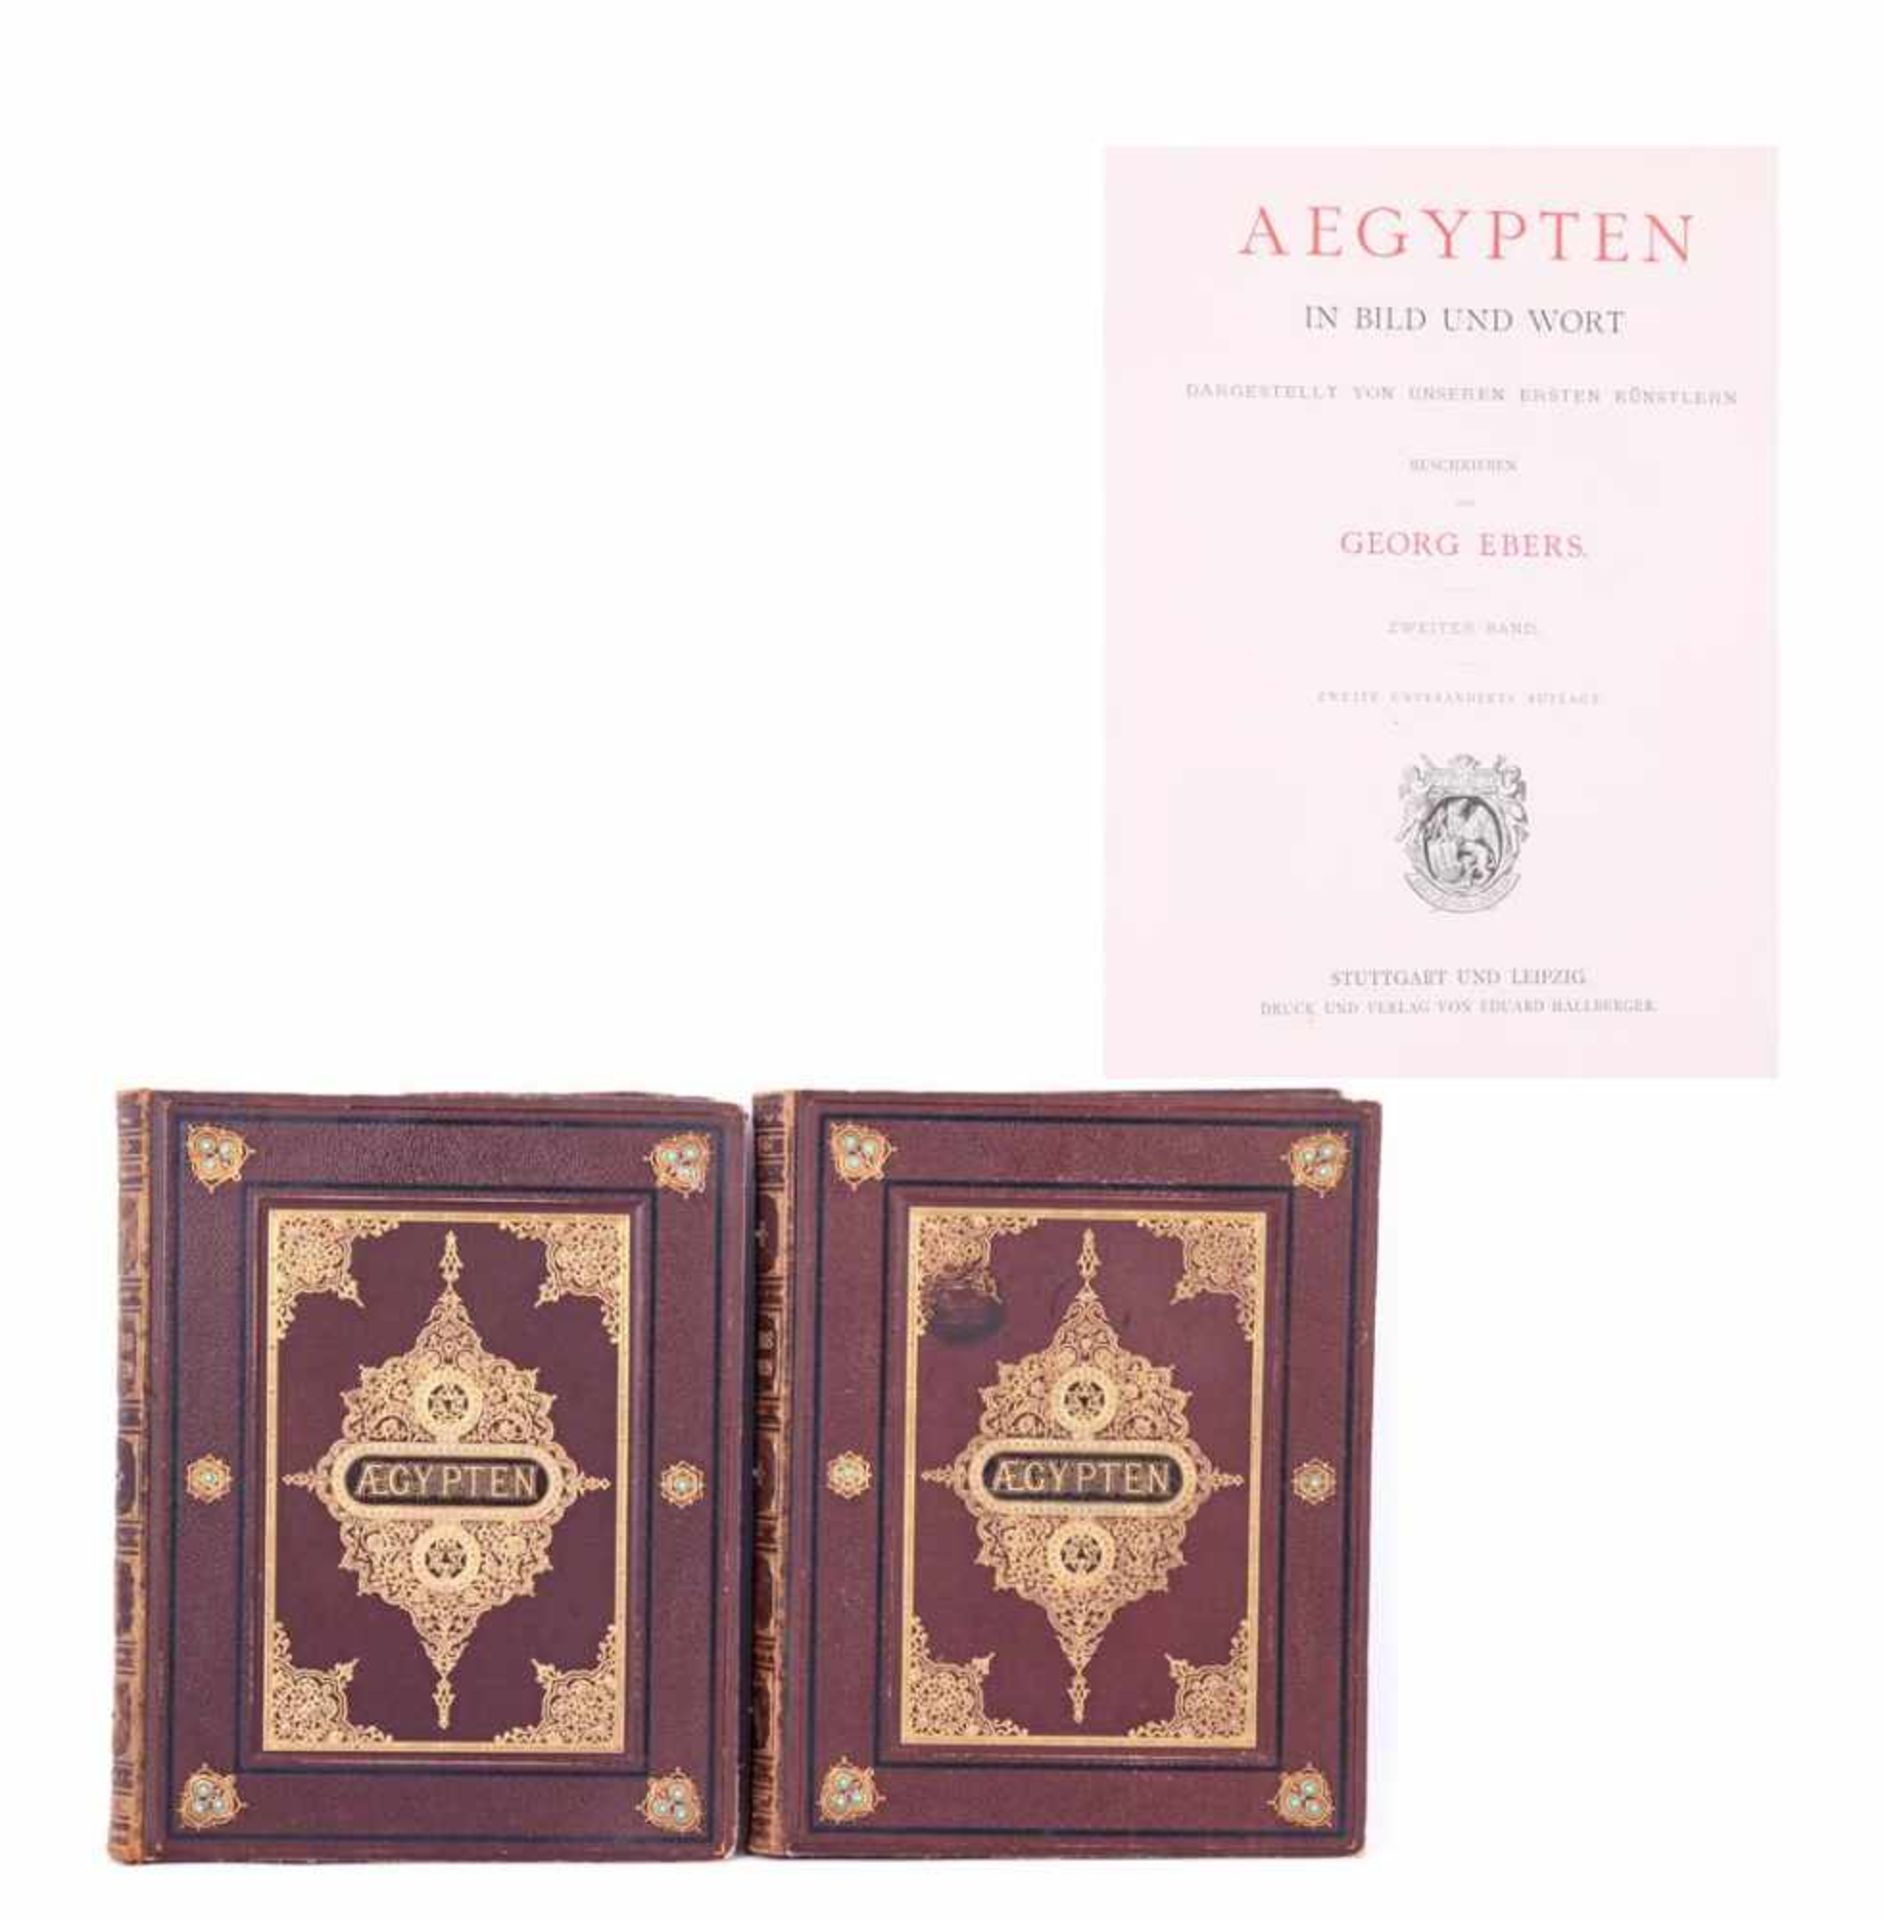 2-delige serie; Aegypten in bild und wort, beschrieben von Georg Ebers, Stuttgart und Leipzig